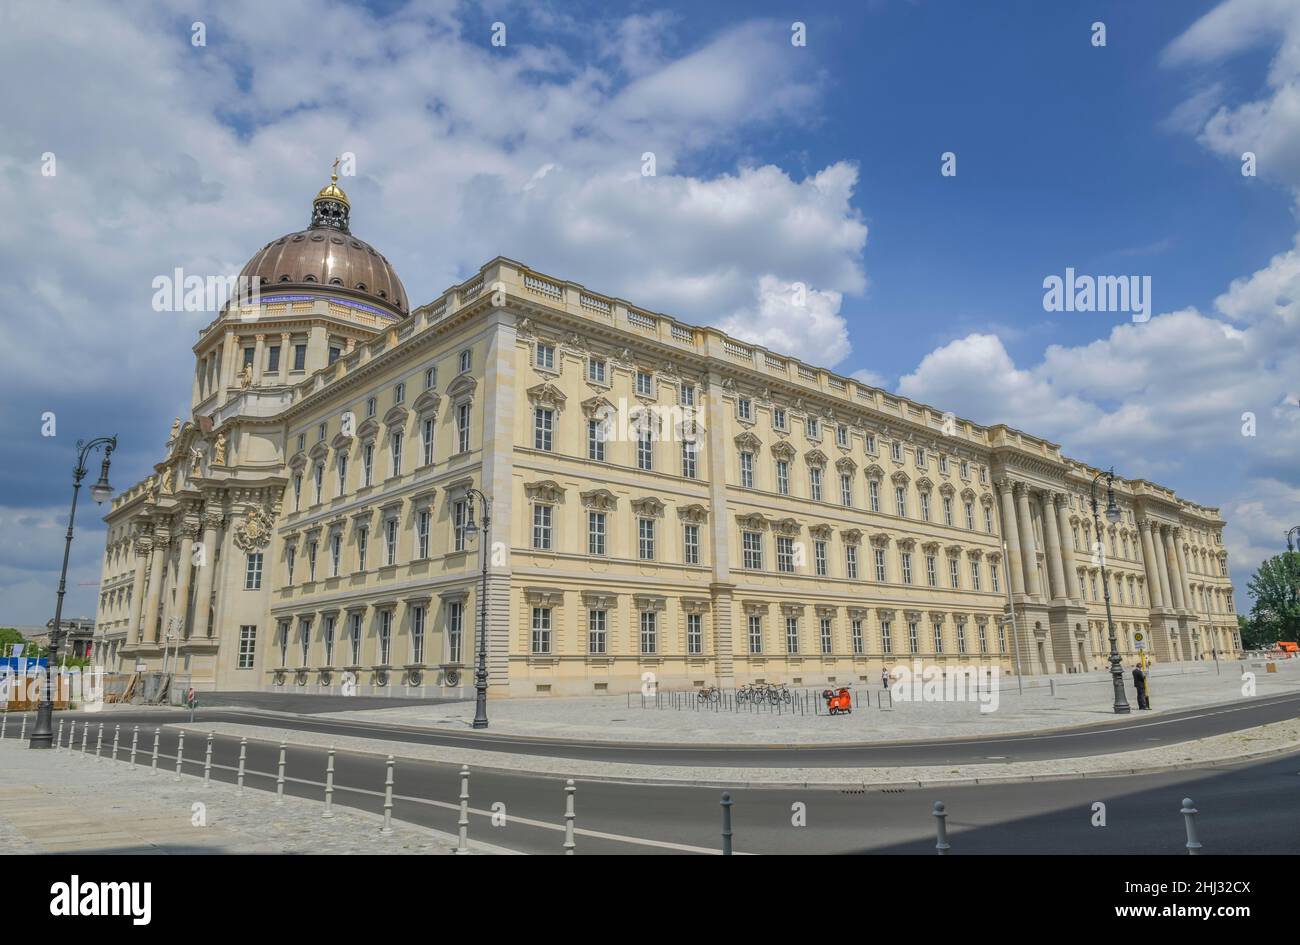 West facade, Humboldtforum, Schlossplatz, Mitte, Berlin, Germany Stock Photo